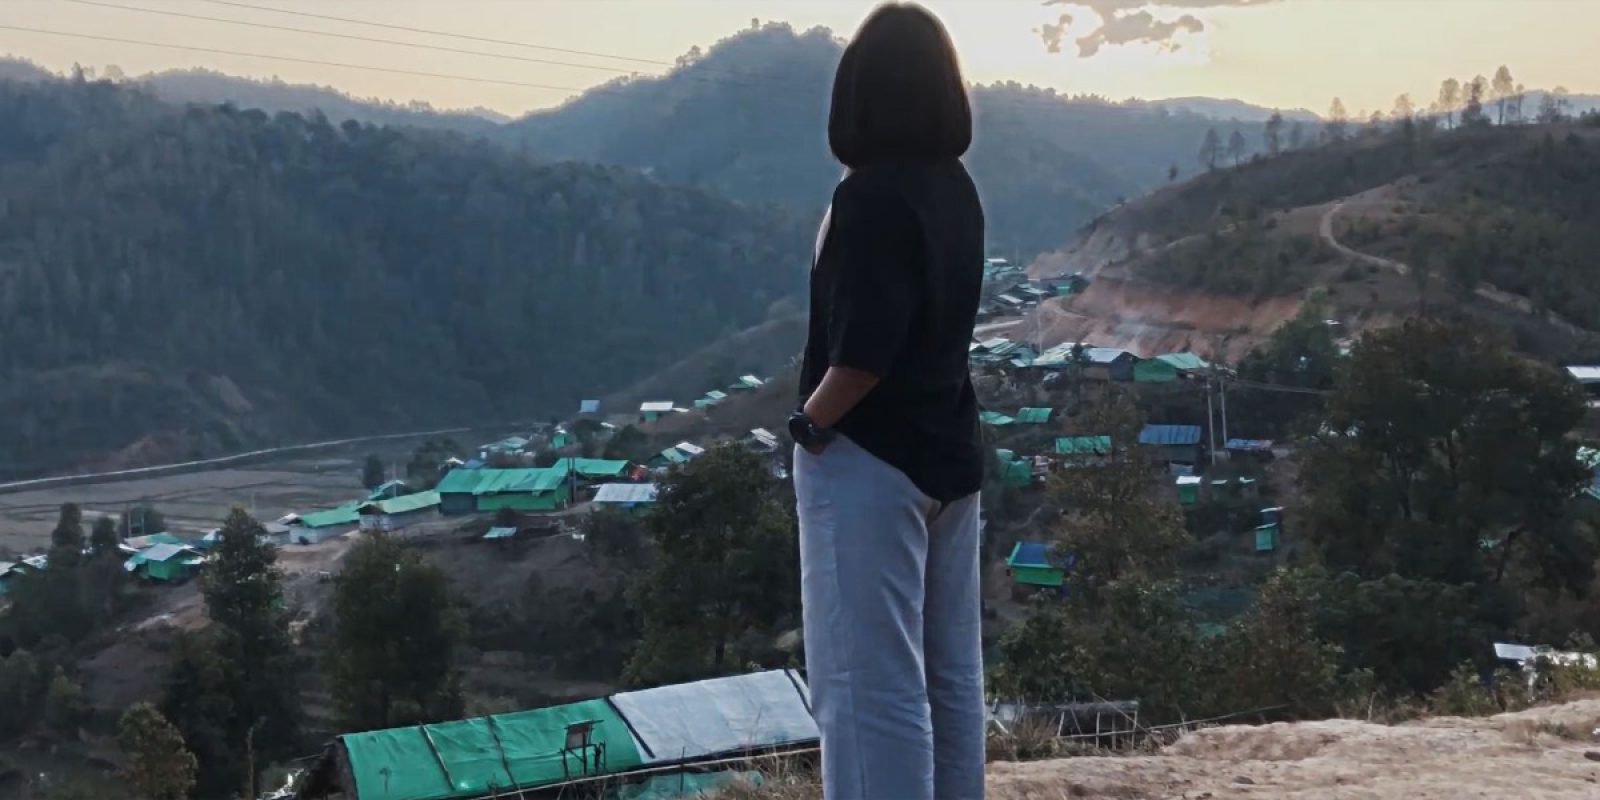 “Echoes of displacement” est une série de vidéos sur la vie quotidienne, les rêves et les espoirs des jeunes filles au Myanmar.